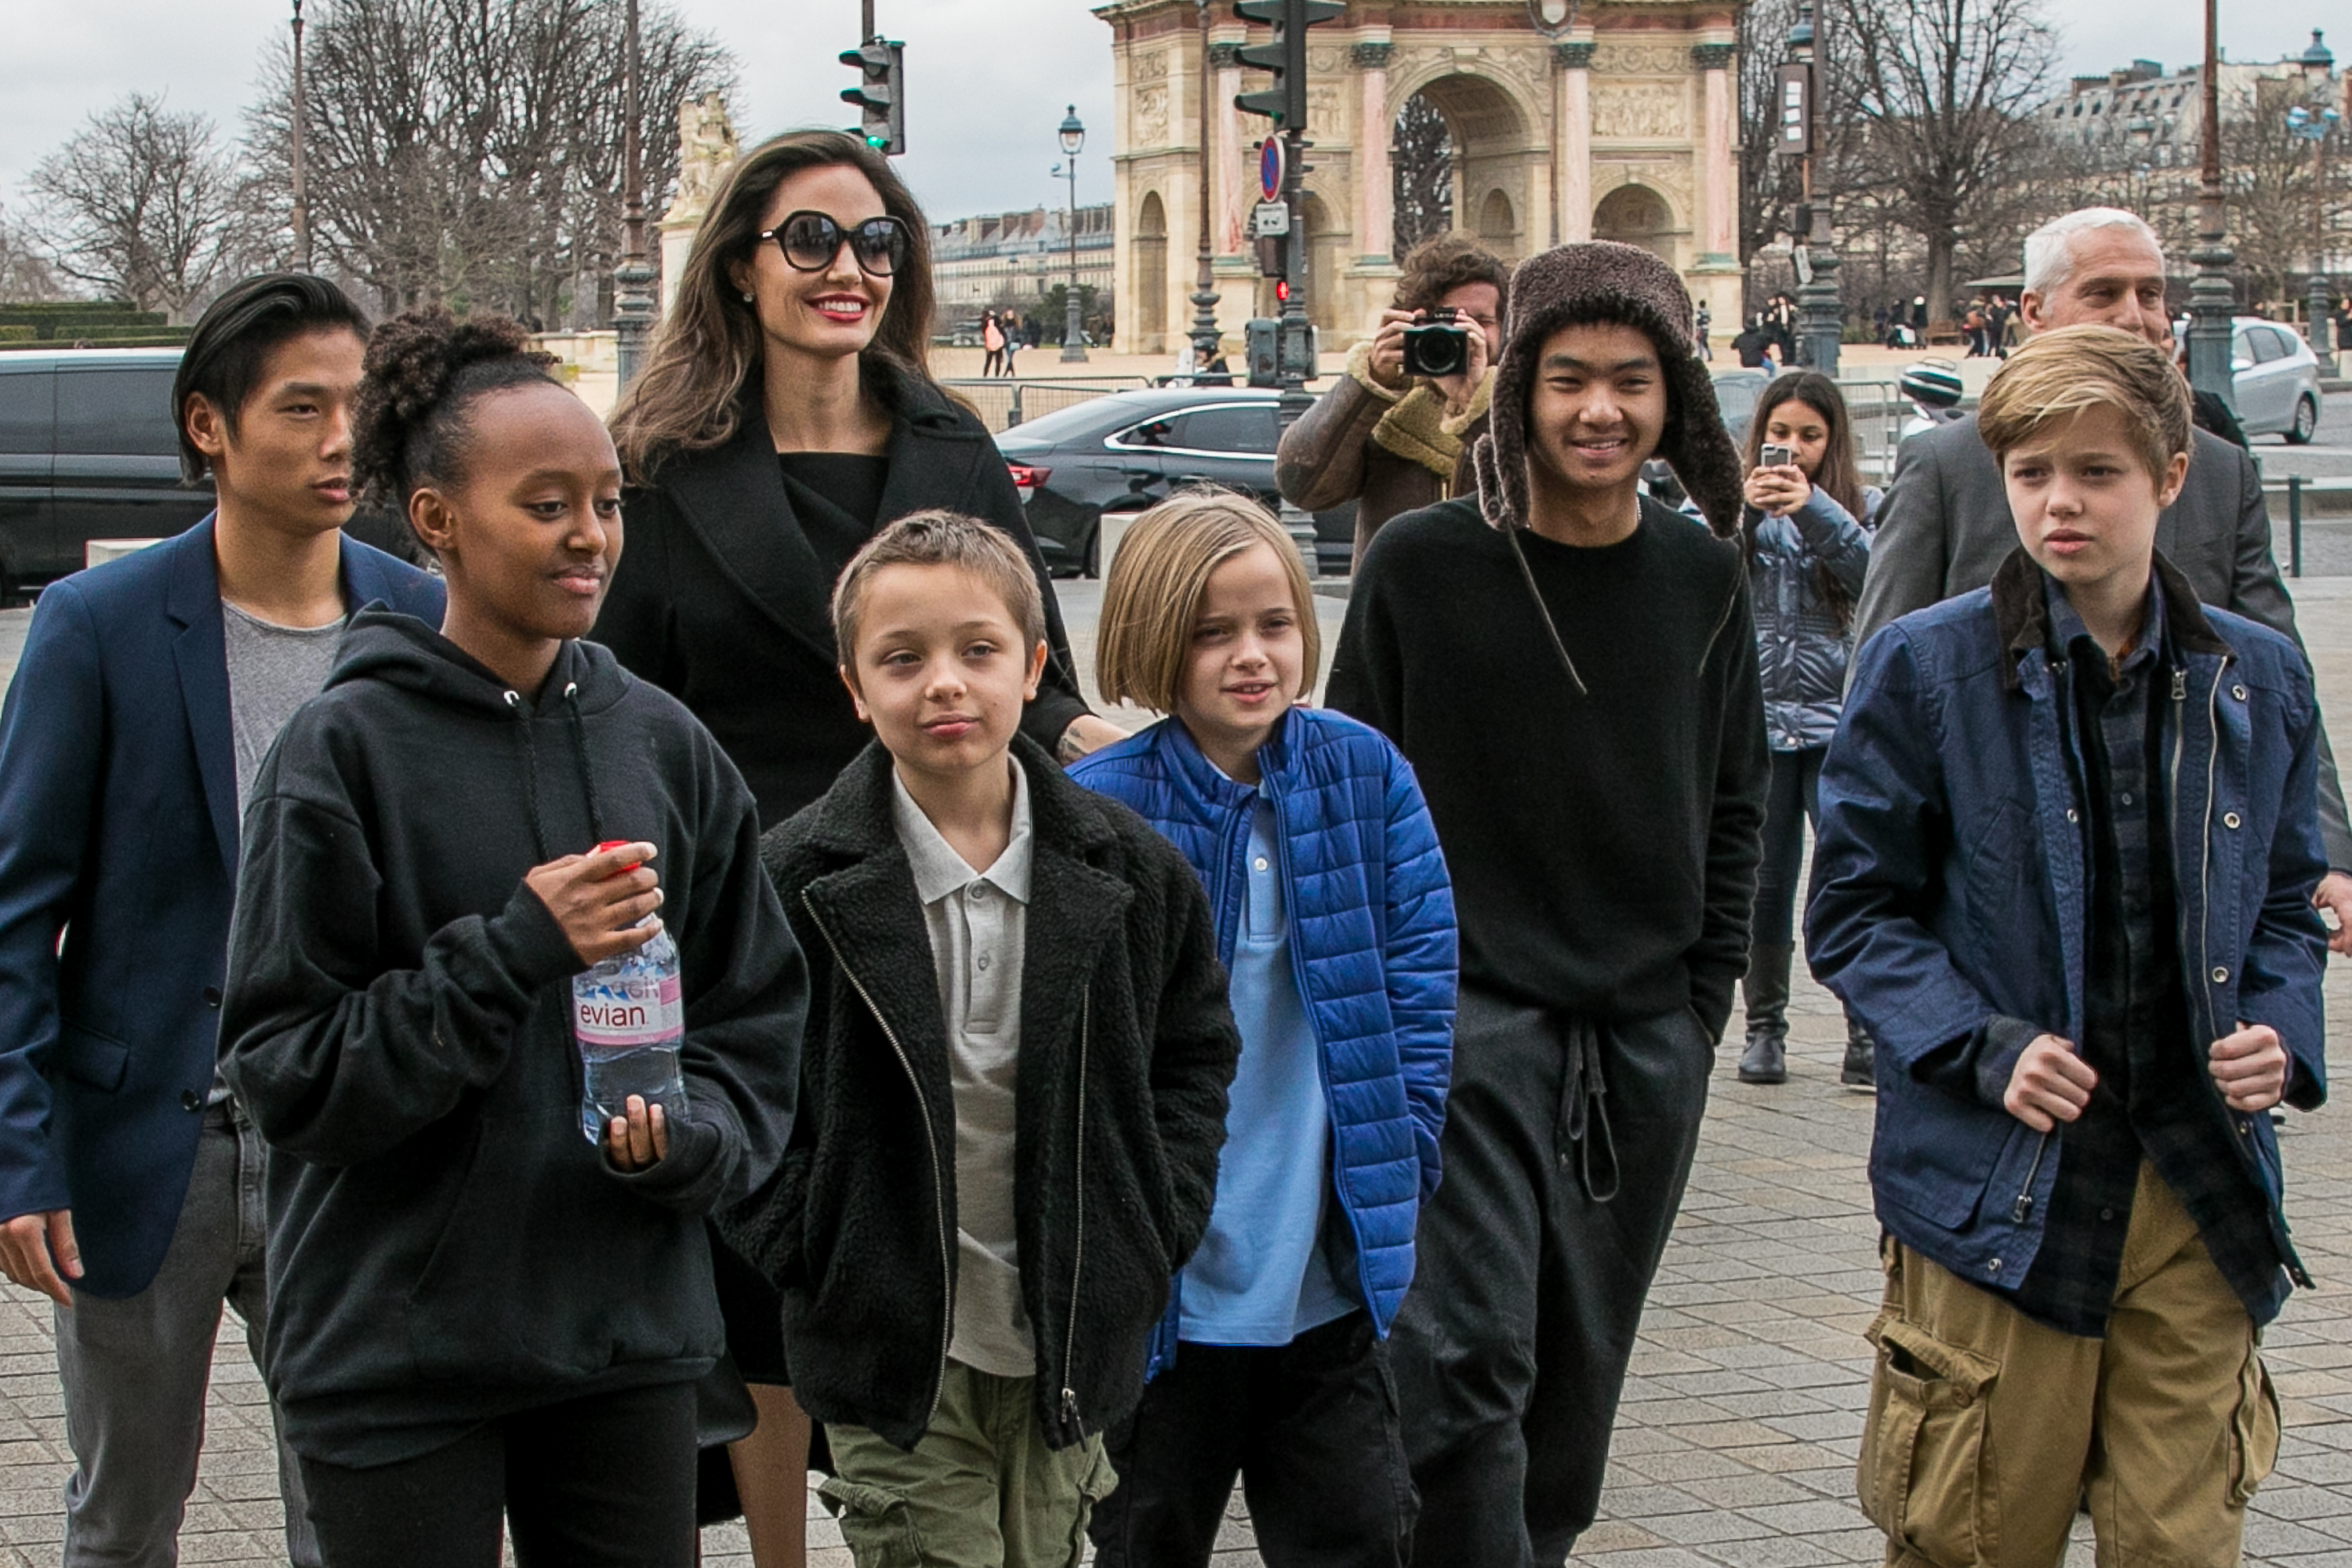 Schauspielerin Angelina Jolie und ihre Kinder Maddox Jolie-Pitt, Shiloh Jolie-Pitt, Vivienne Marcheline Jolie-Pitt, Knox Leon Jolie-Pitt, Zahara Jolie-Pitt und Pax Jolie-Pitt kommen am 30. Januar 2018 in Paris, Frankreich, im Louvre-Museum an. | Quelle: Getty Images